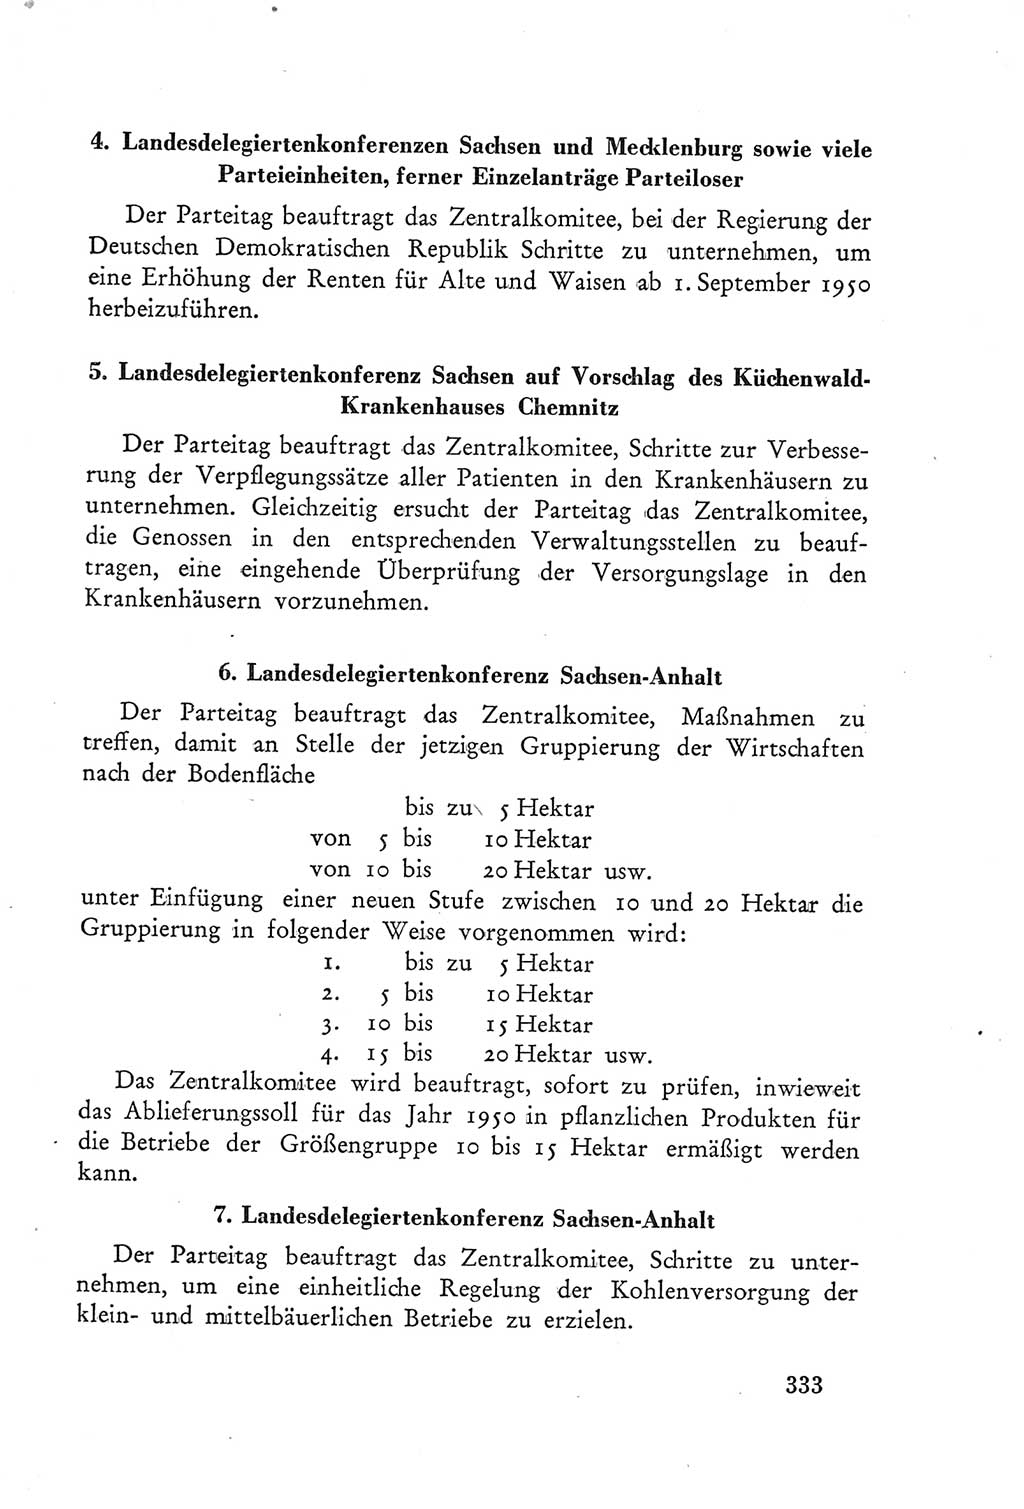 Protokoll der Verhandlungen des Ⅲ. Parteitages der Sozialistischen Einheitspartei Deutschlands (SED) [Deutsche Demokratische Republik (DDR)] 1950, Band 2, Seite 333 (Prot. Verh. Ⅲ. PT SED DDR 1950, Bd. 2, S. 333)